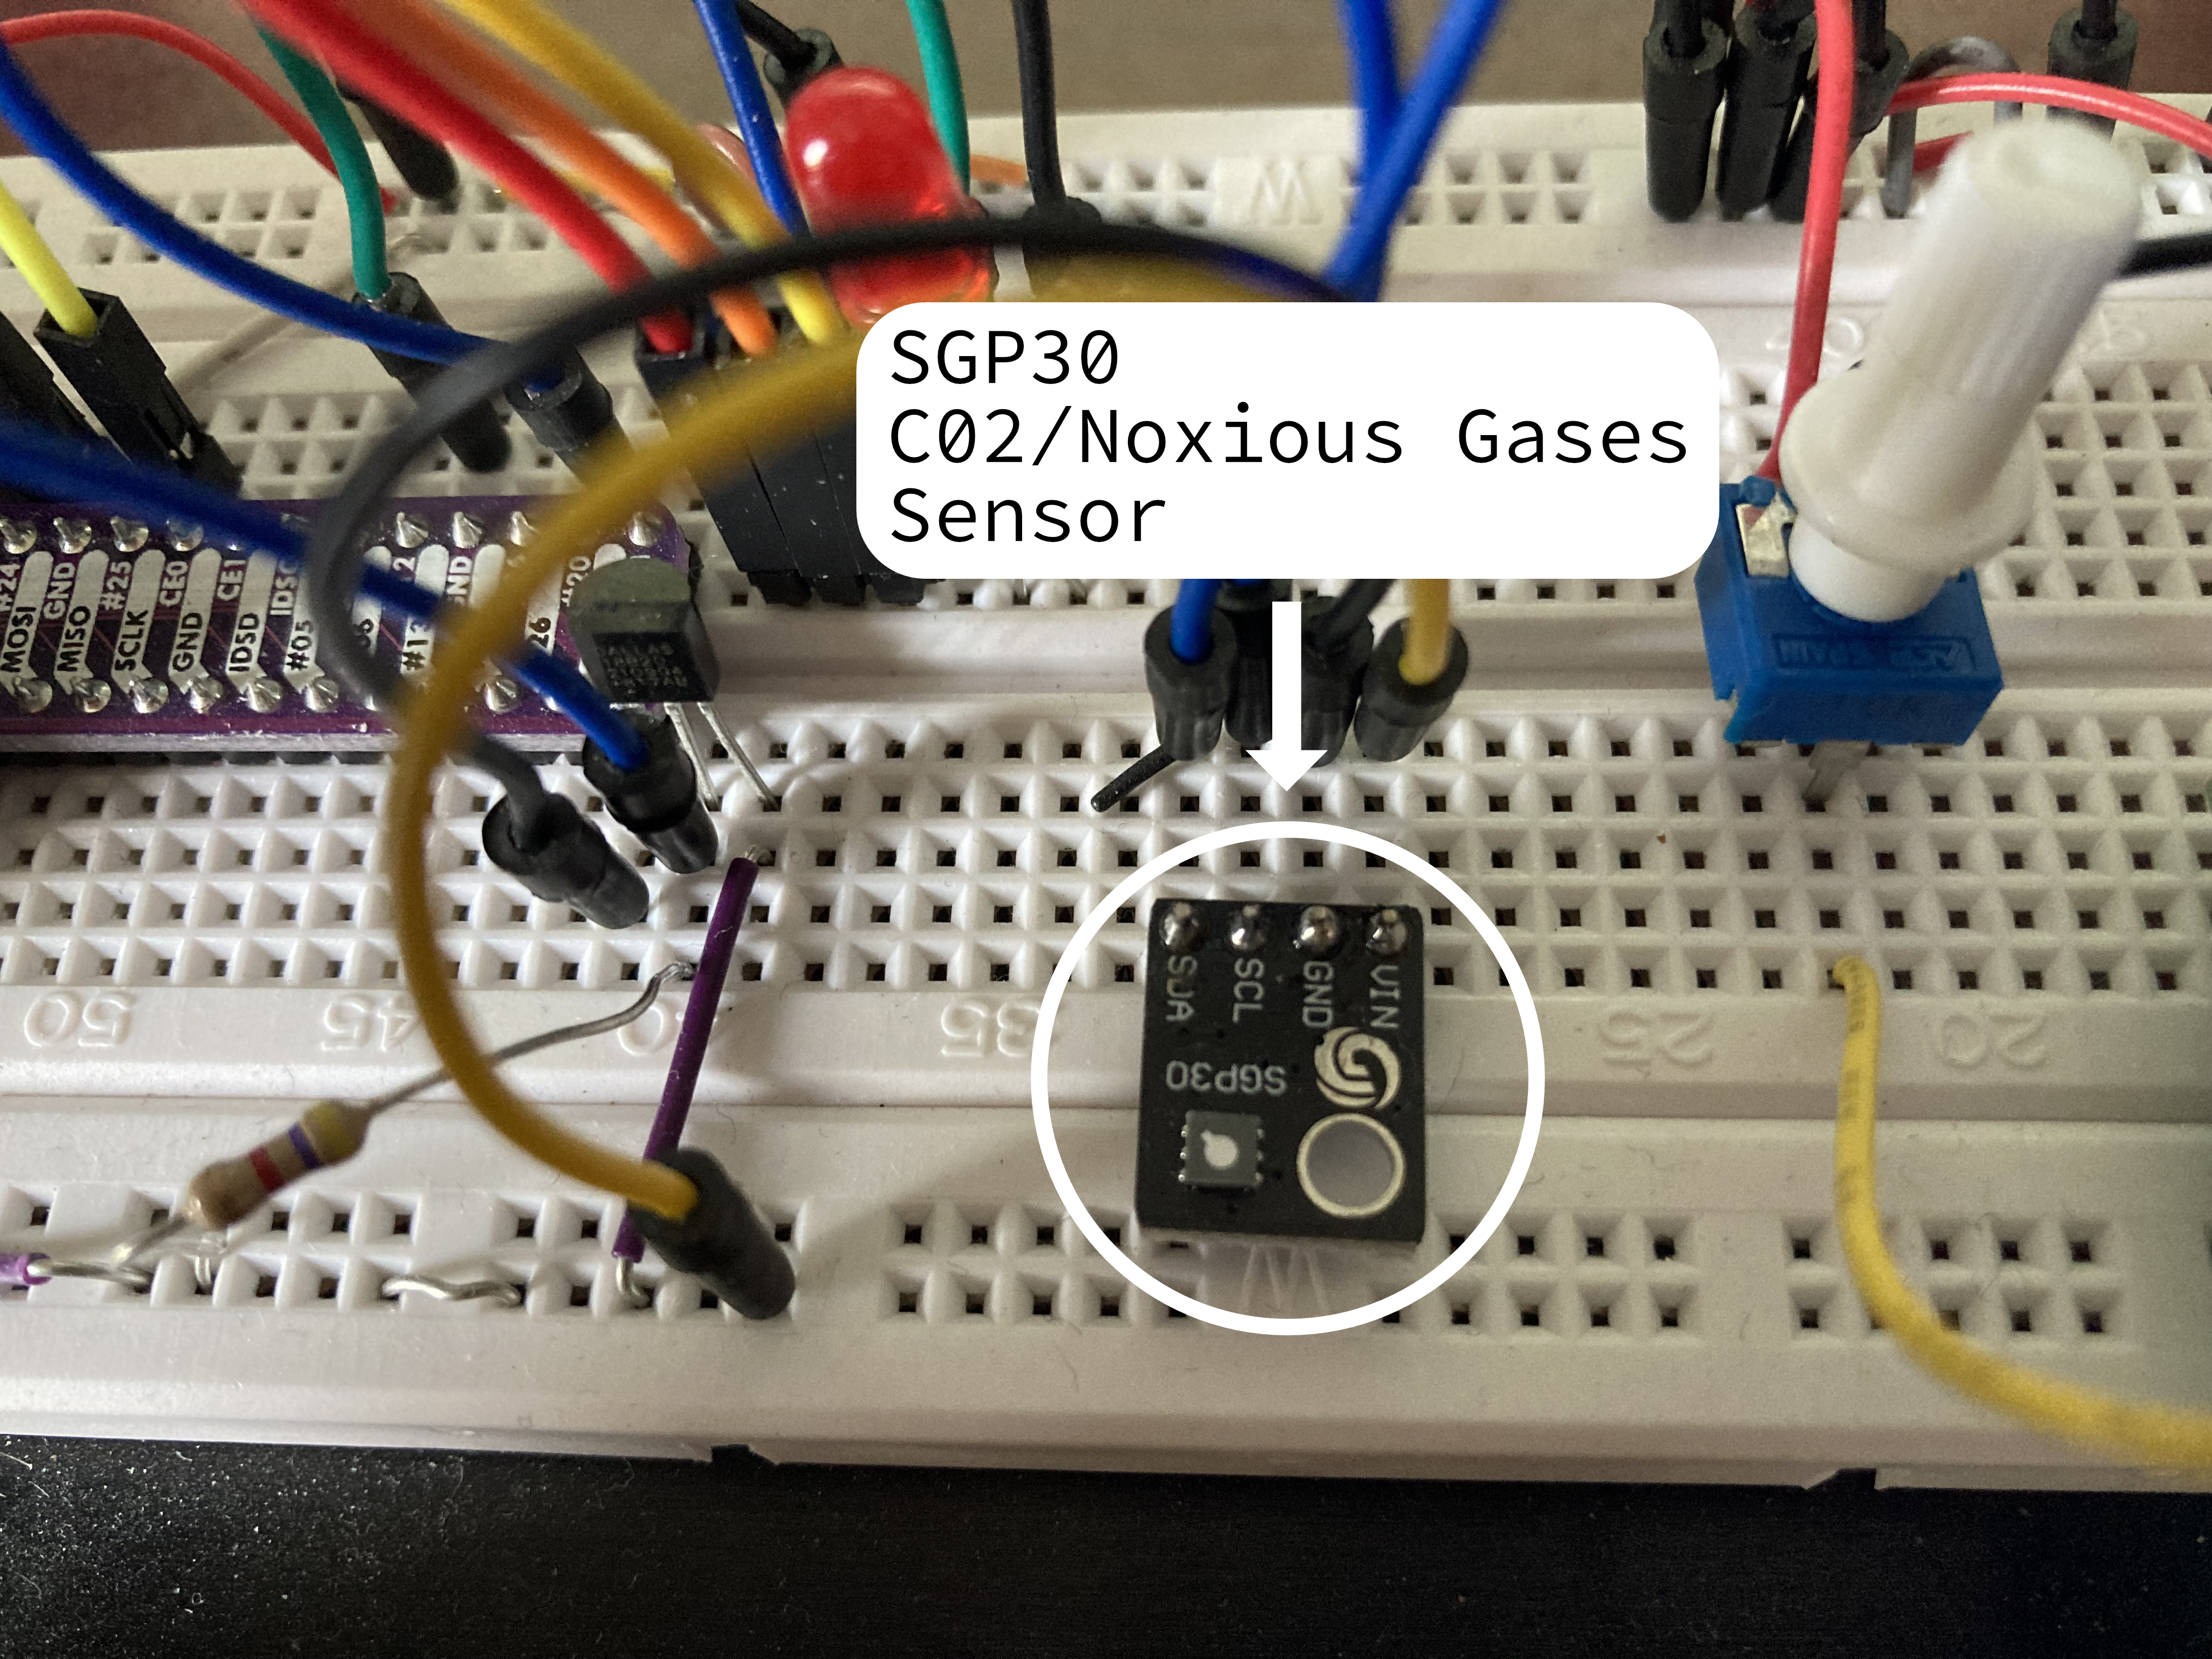 CO2/Noxious Gases sensor